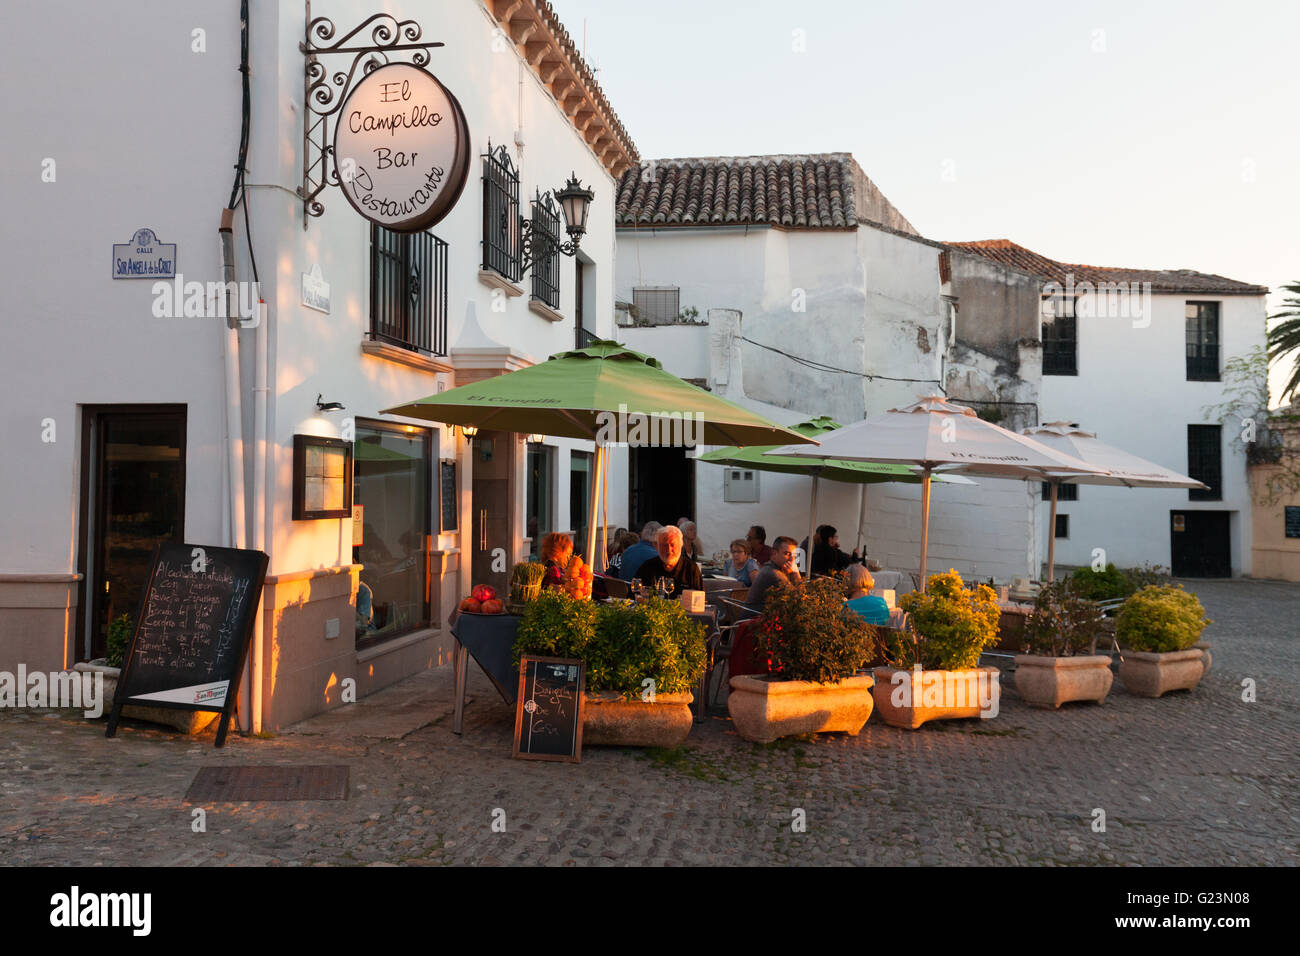 La gente seduta a mangiare in un ristorante la sera, Ronda, Andalusia Spagna Foto Stock